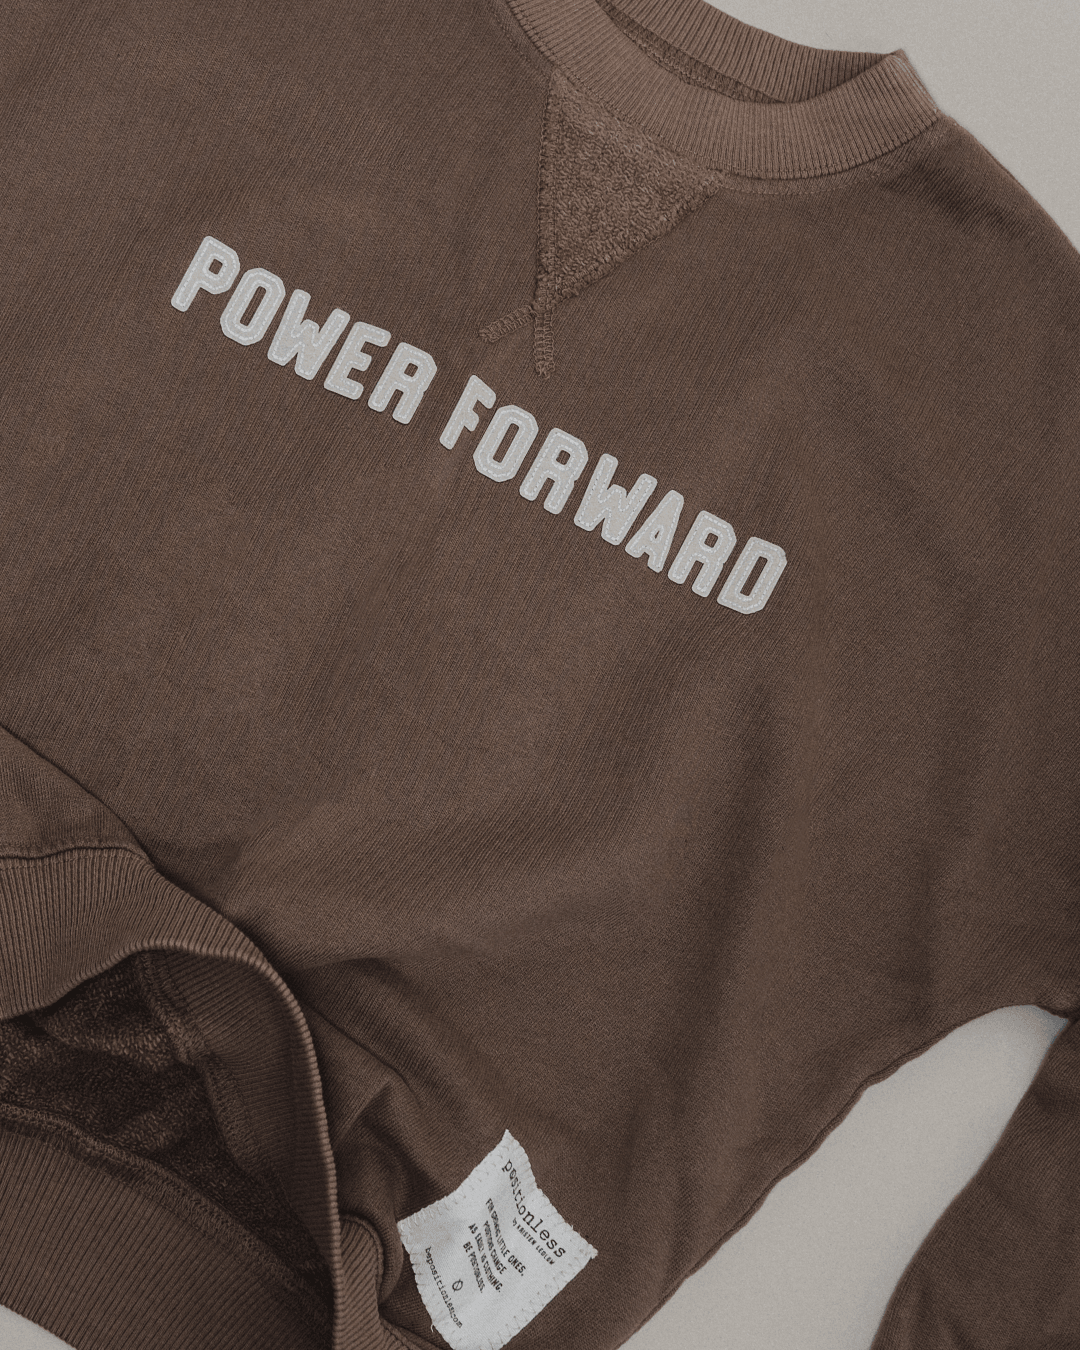 Power Forward L/S Sweatshirt - positionless by Kristen Ledlow